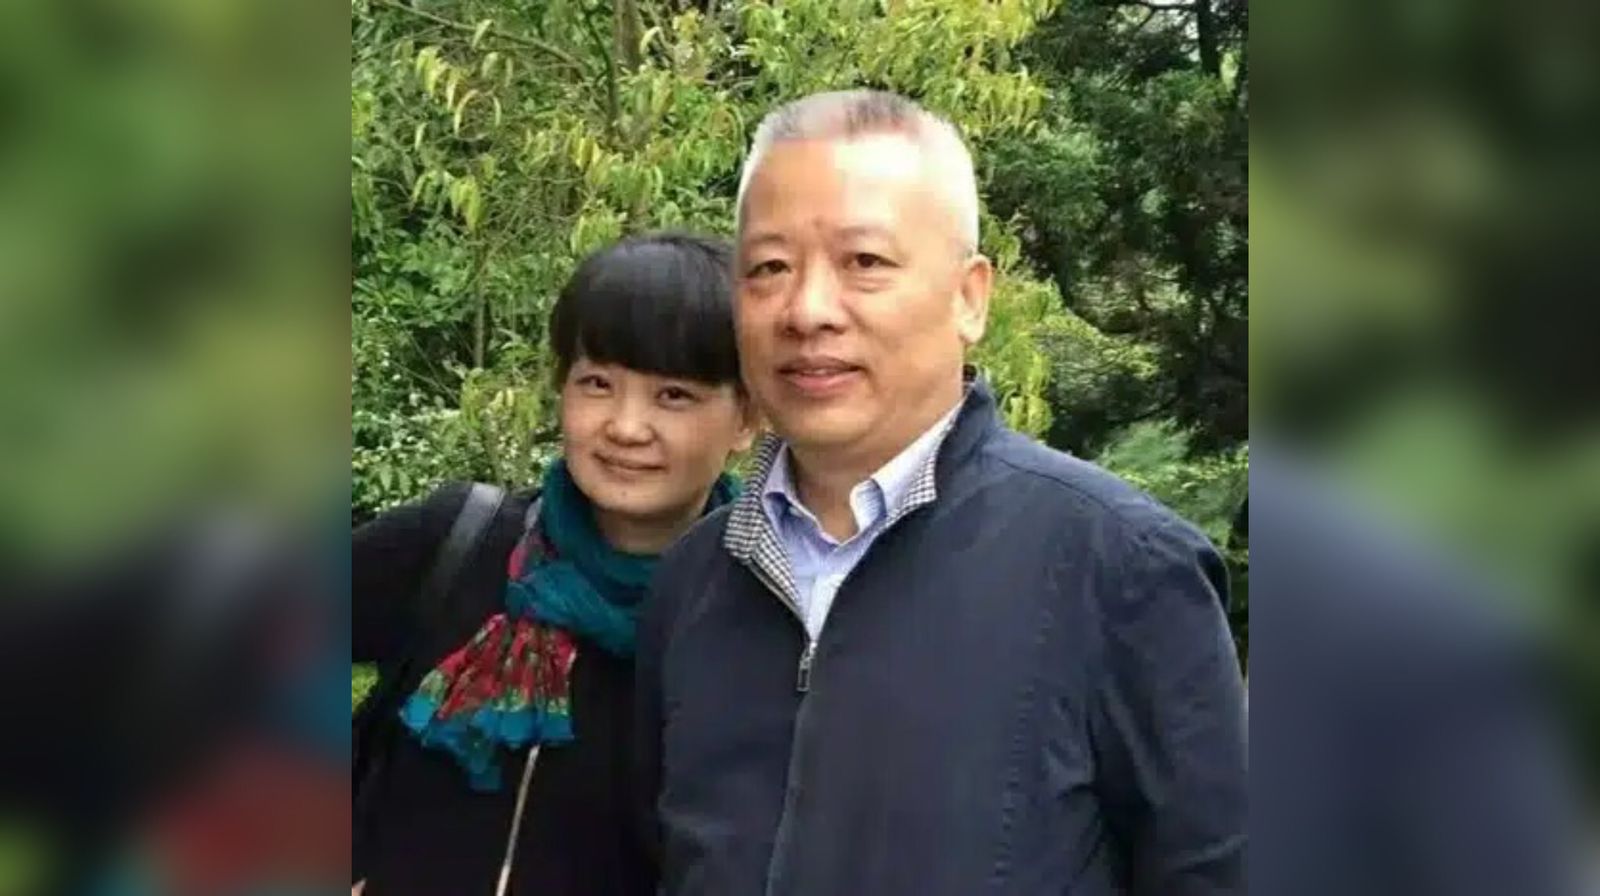 Pastor relata crescimento espiritual durante prisão na China: ‘Deus me deu graça’